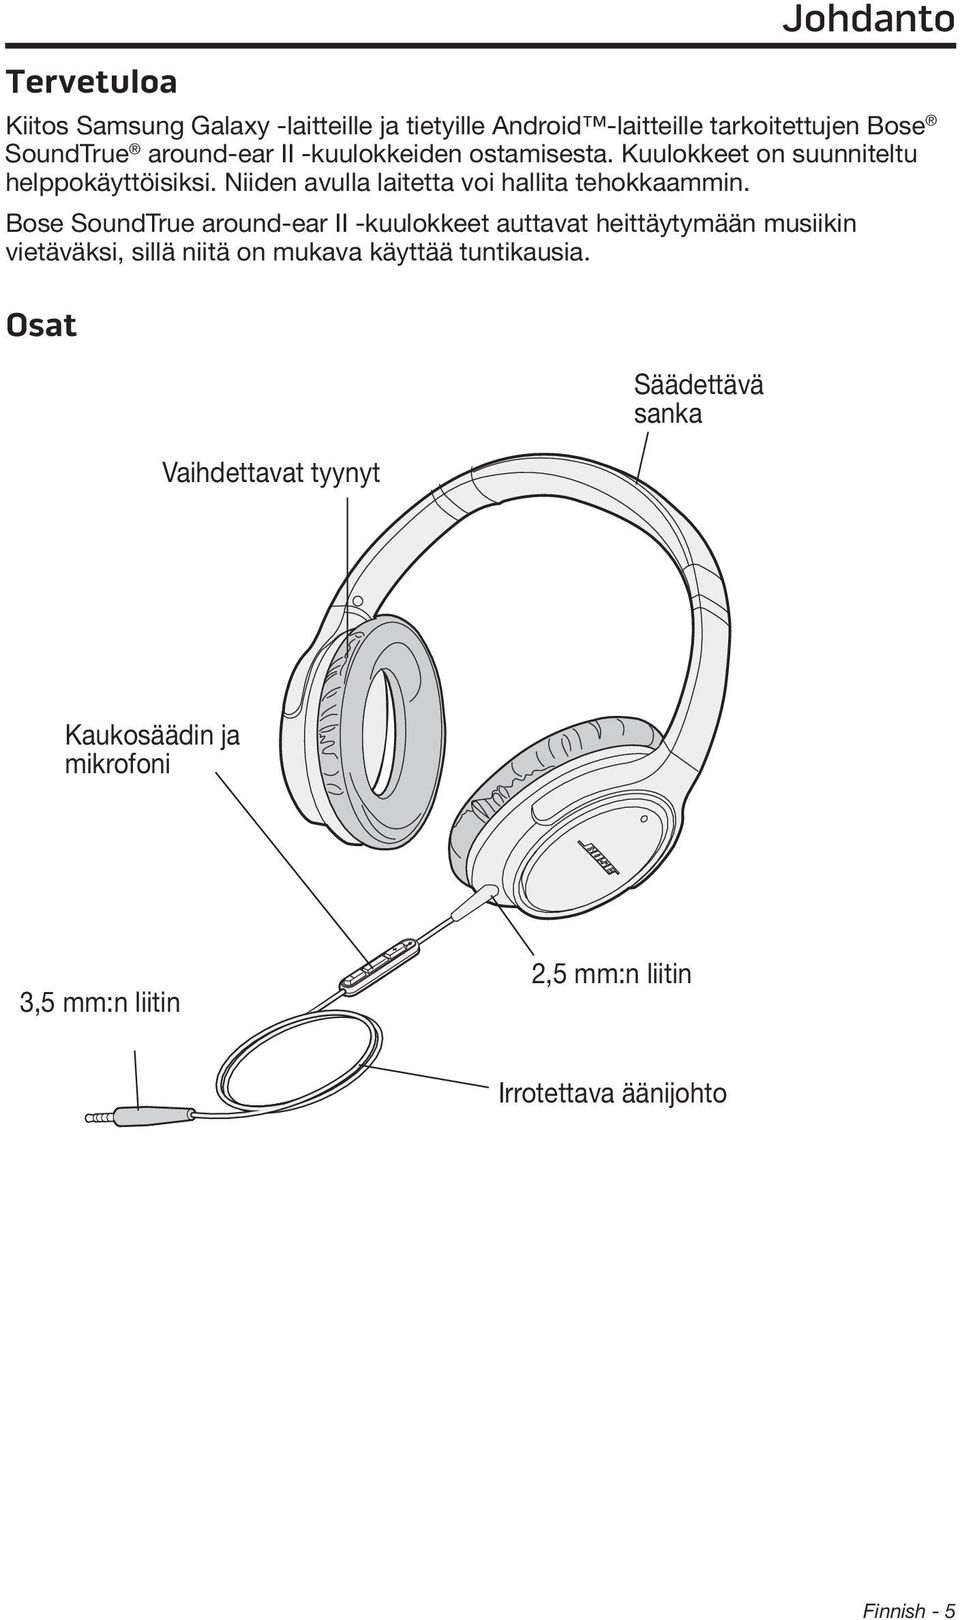 Bose SoundTrue around-ear II -kuulokkeet auttavat heittäytymään musiikin vietäväksi, sillä niitä on mukava käyttää tuntikausia.